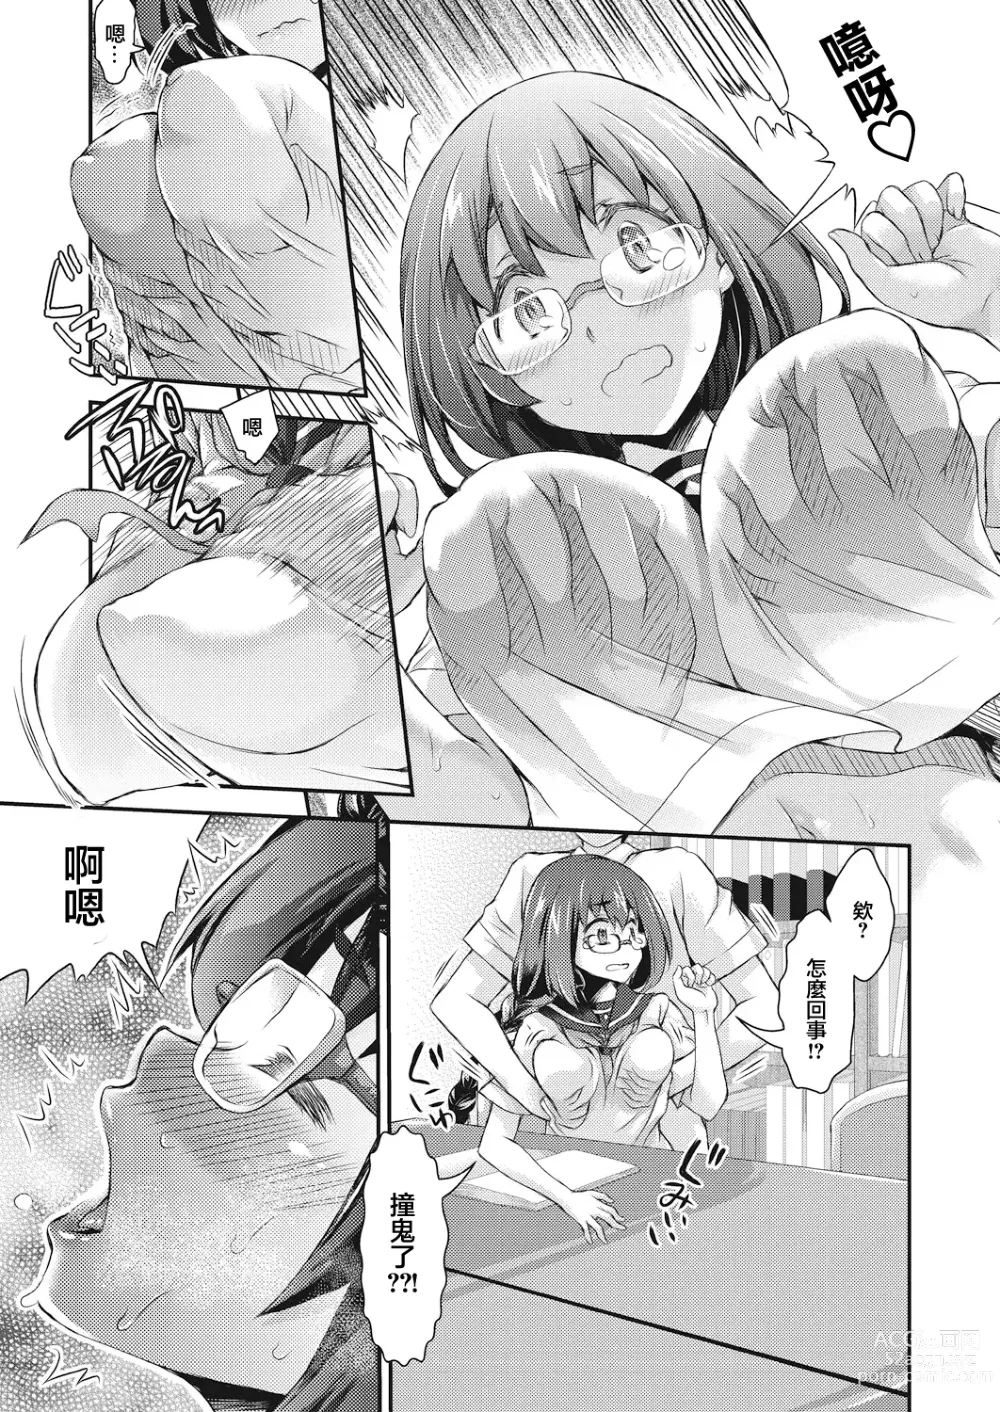 Page 8 of manga BOCCHI NO ZAMMA